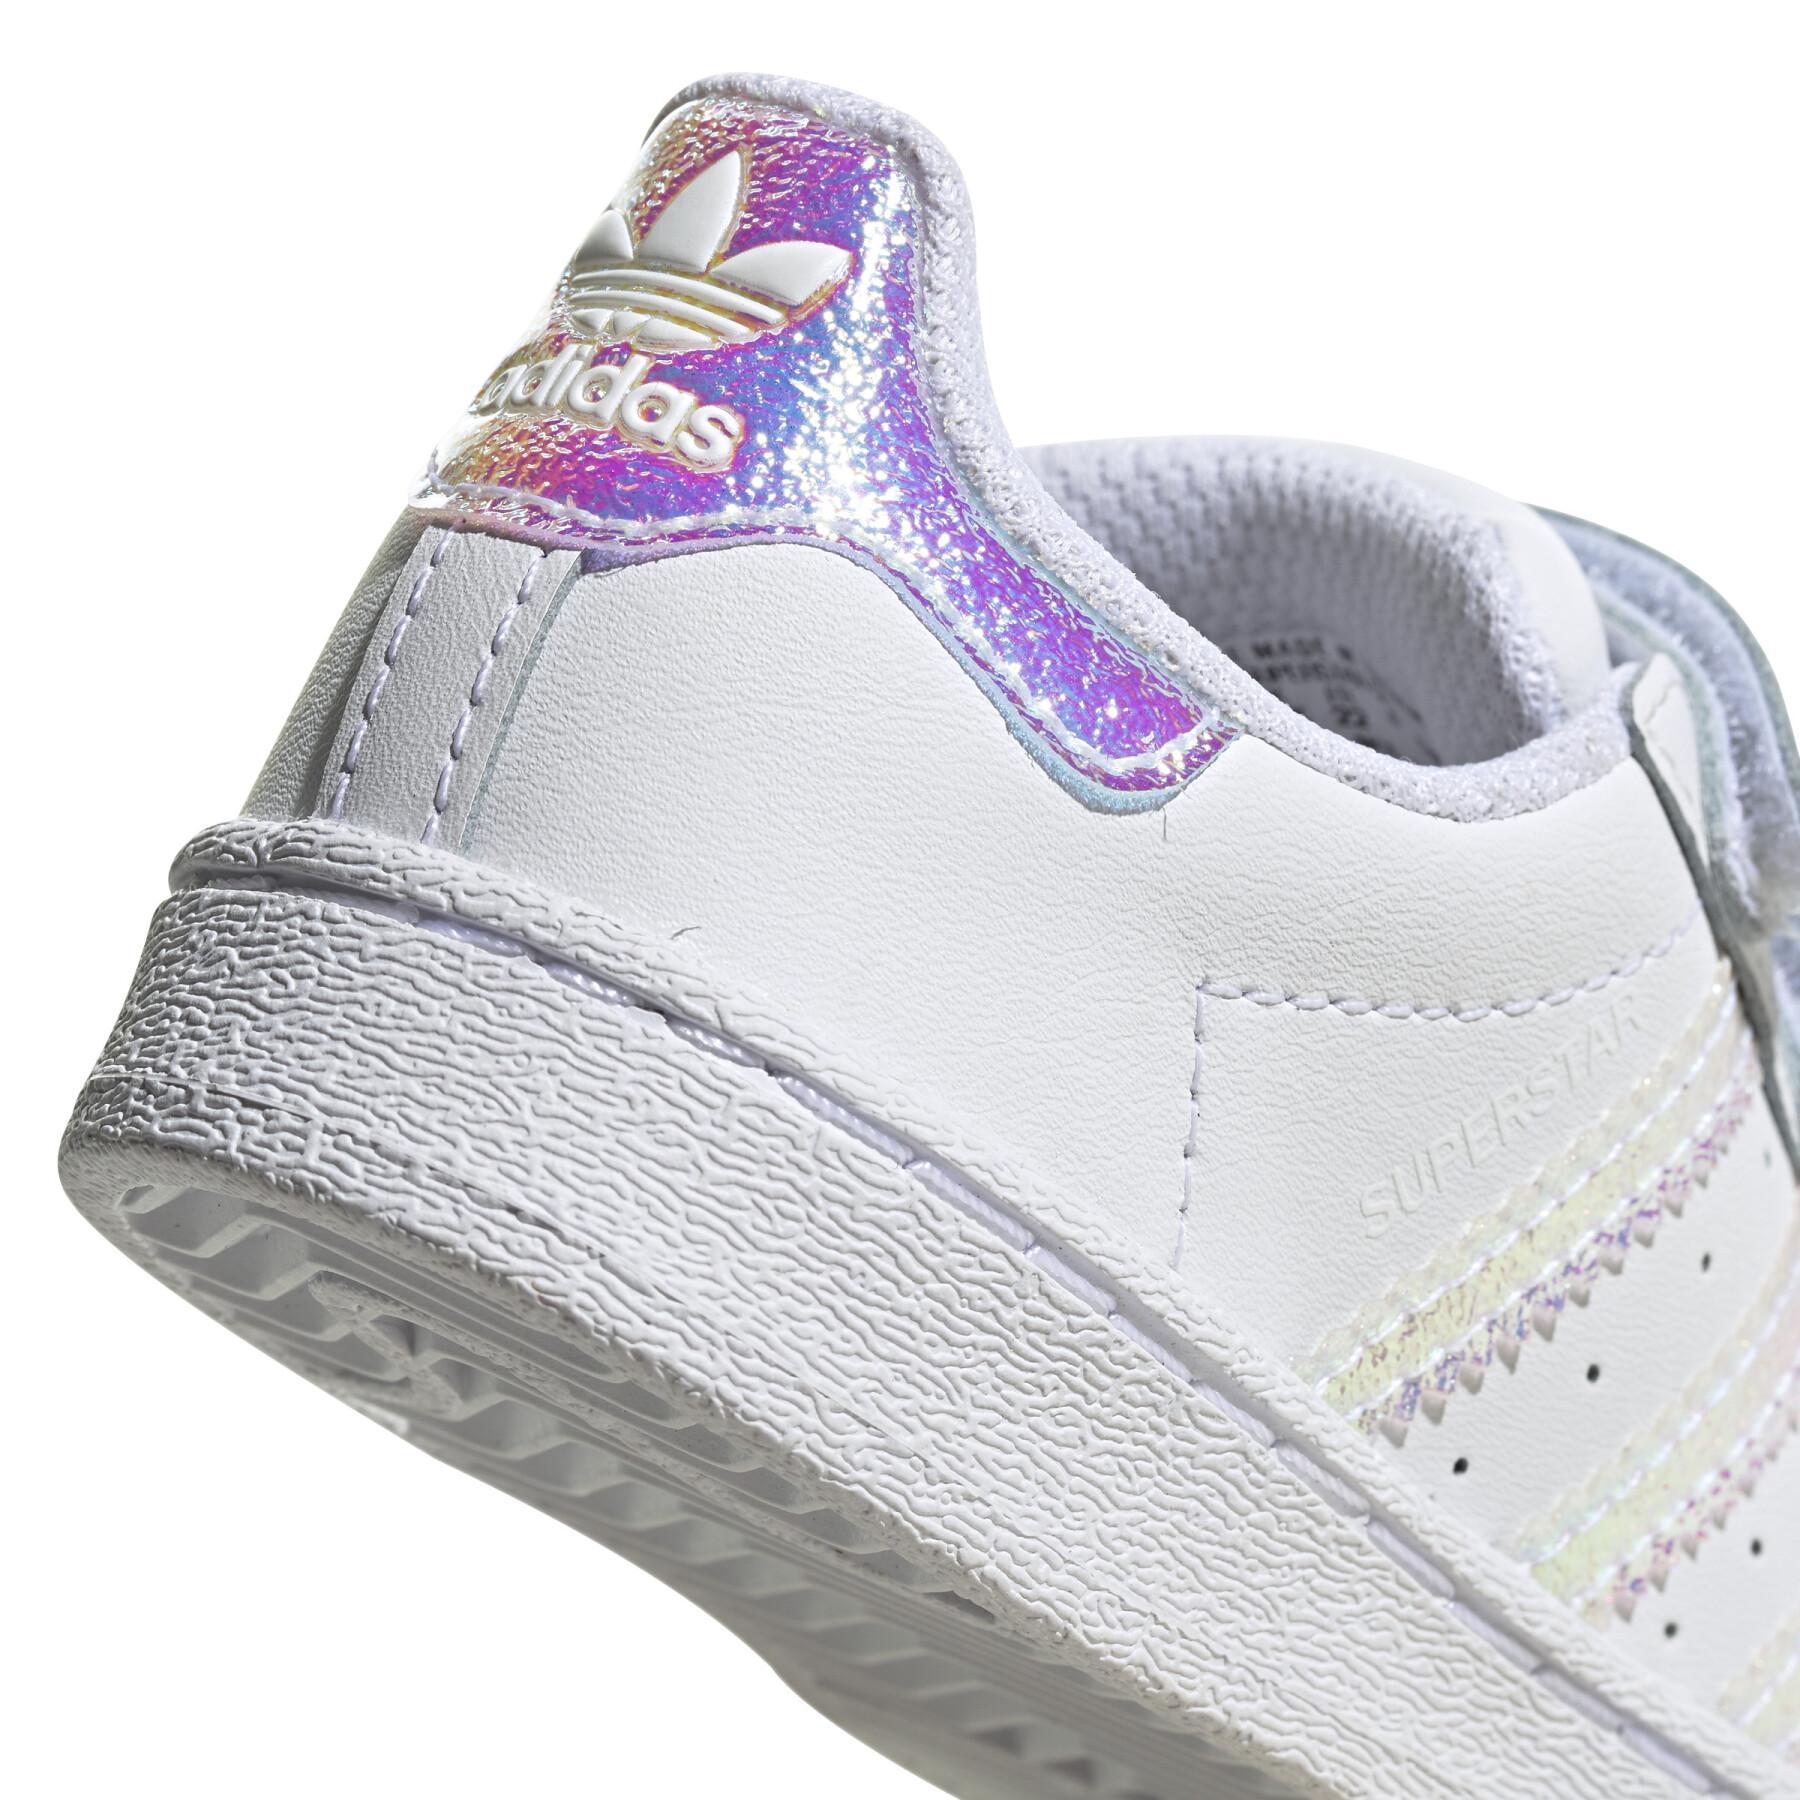 Baby sneakers adidas Originals Superstar CF